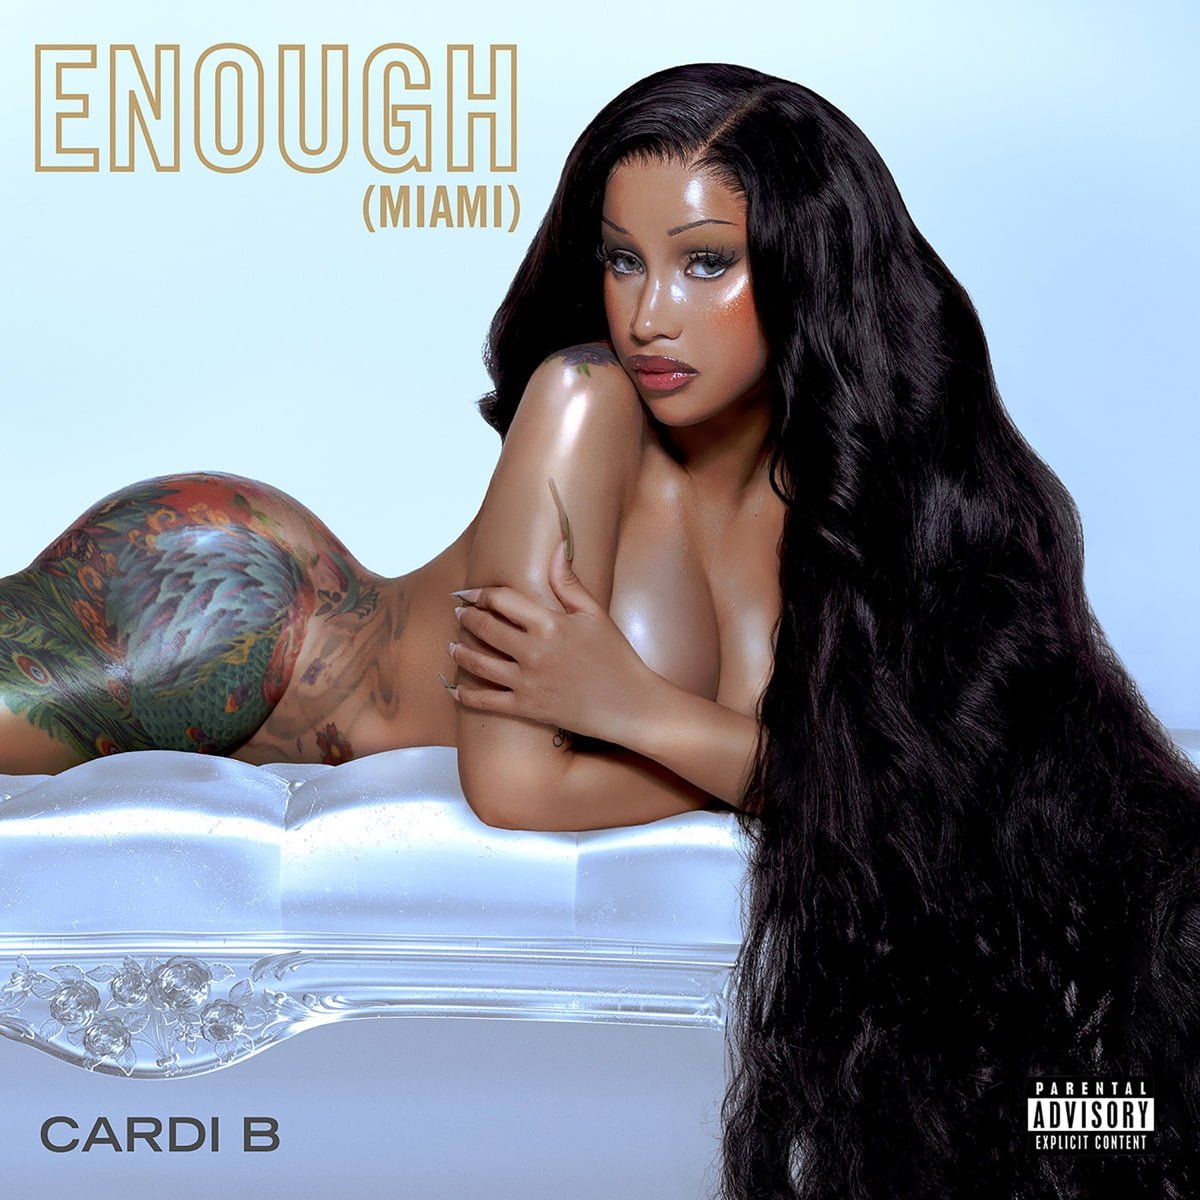 Cardi B regresa a sus sonidos raperos en su nuevo single, ‘Enough (Miami)’